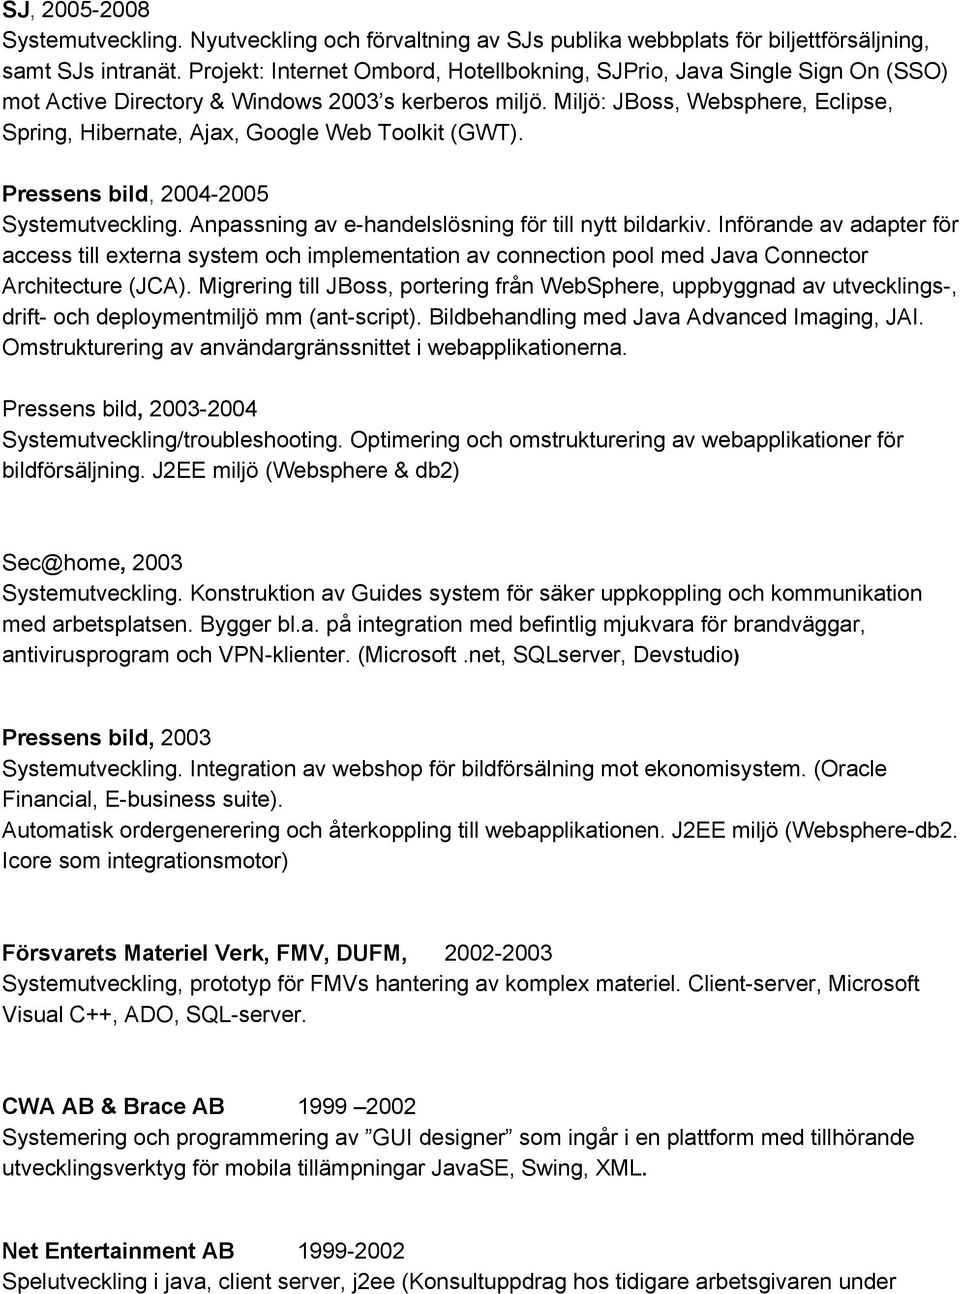 Miljö: JBoss, Websphere, Eclipse, Spring, Hibernate, Ajax, Google Web Toolkit (GWT). Pressens bild, 2004 2005 Systemutveckling. Anpassning av e handelslösning för till nytt bildarkiv.